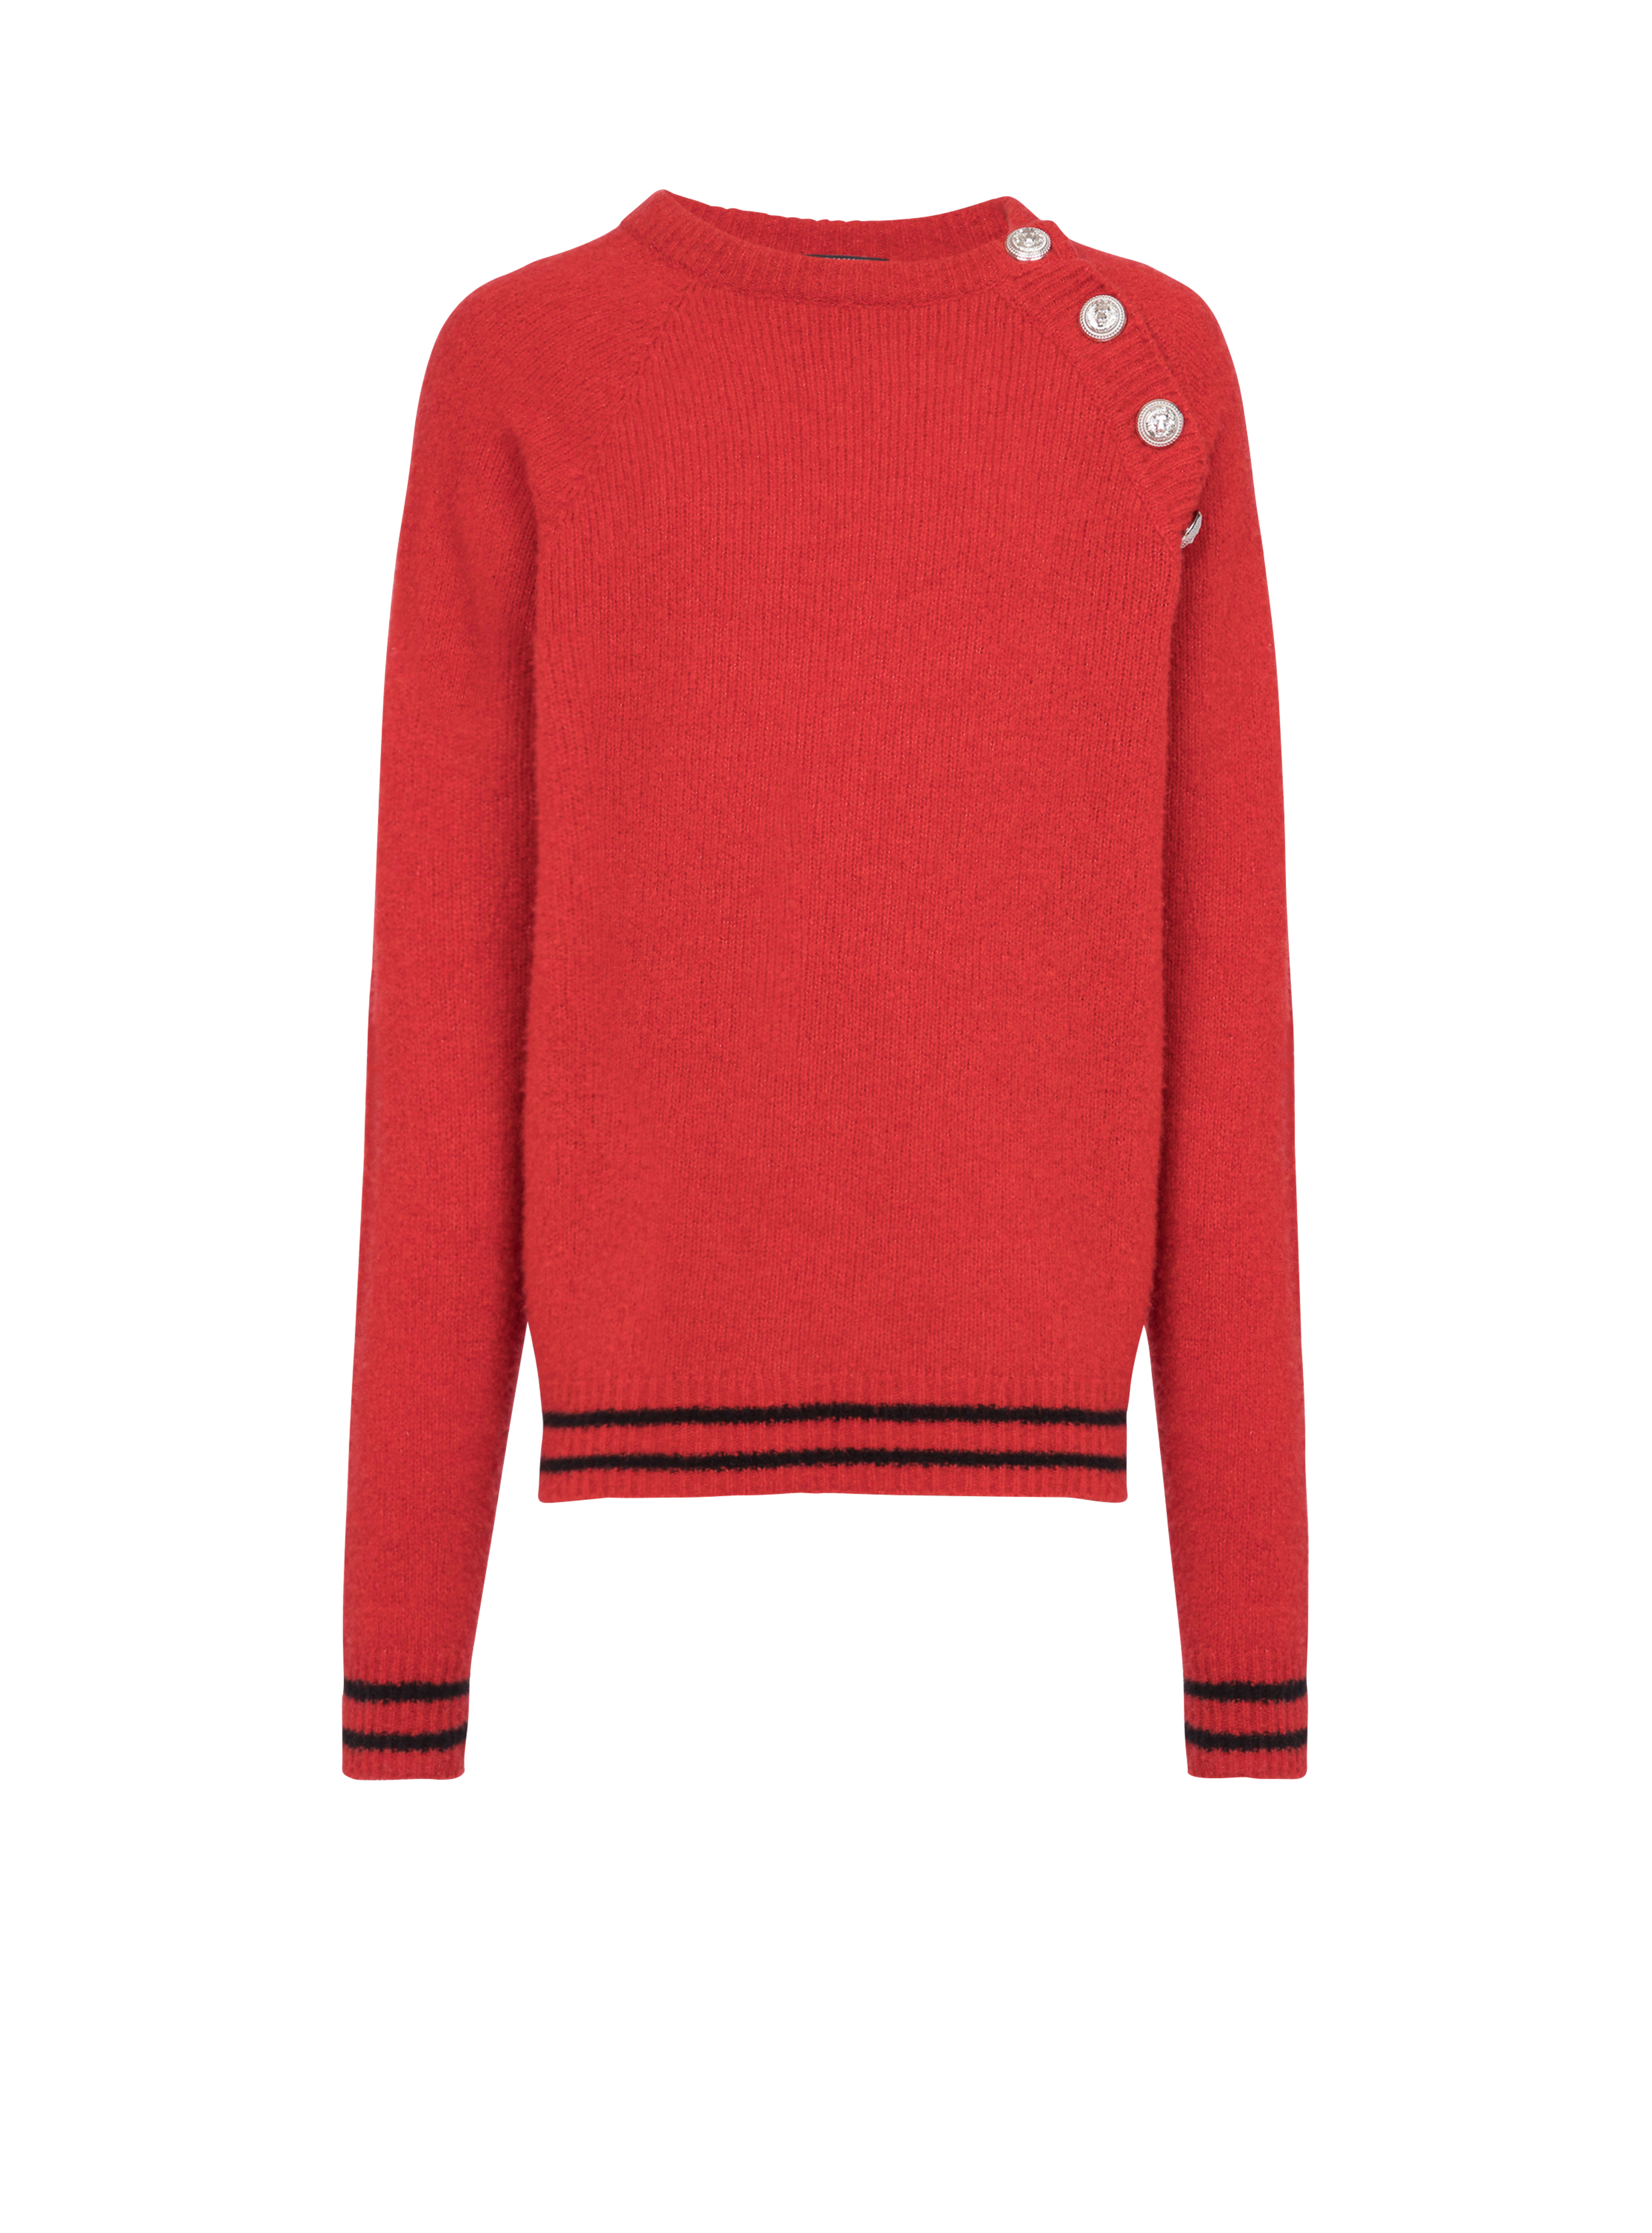 캐시미어 스웨터, 빨간색